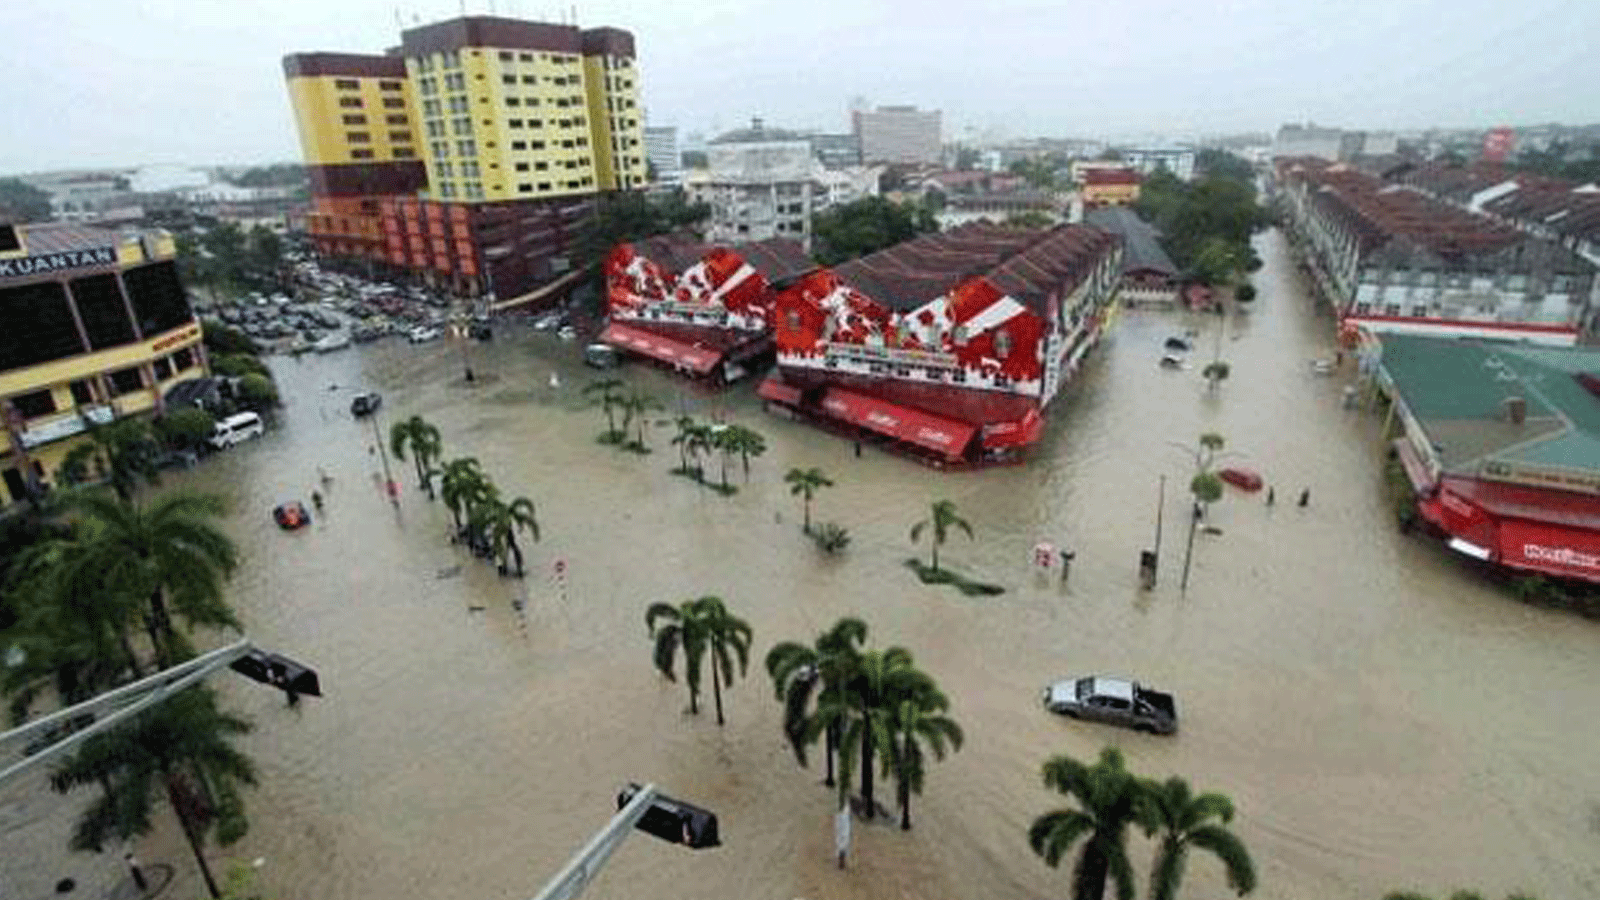  ارتفع أمس الثلاثاء عدد ضحايا أسوأ فيضانات تشهدها ماليزيا منذ سنوات إلى 14 قتيلا وأكثر من سبعين ألف نازح فيما وزّع الجيش الطعام بالقوارب على الأشخاص الذين ما زالوا محاصرين في منازلهم.